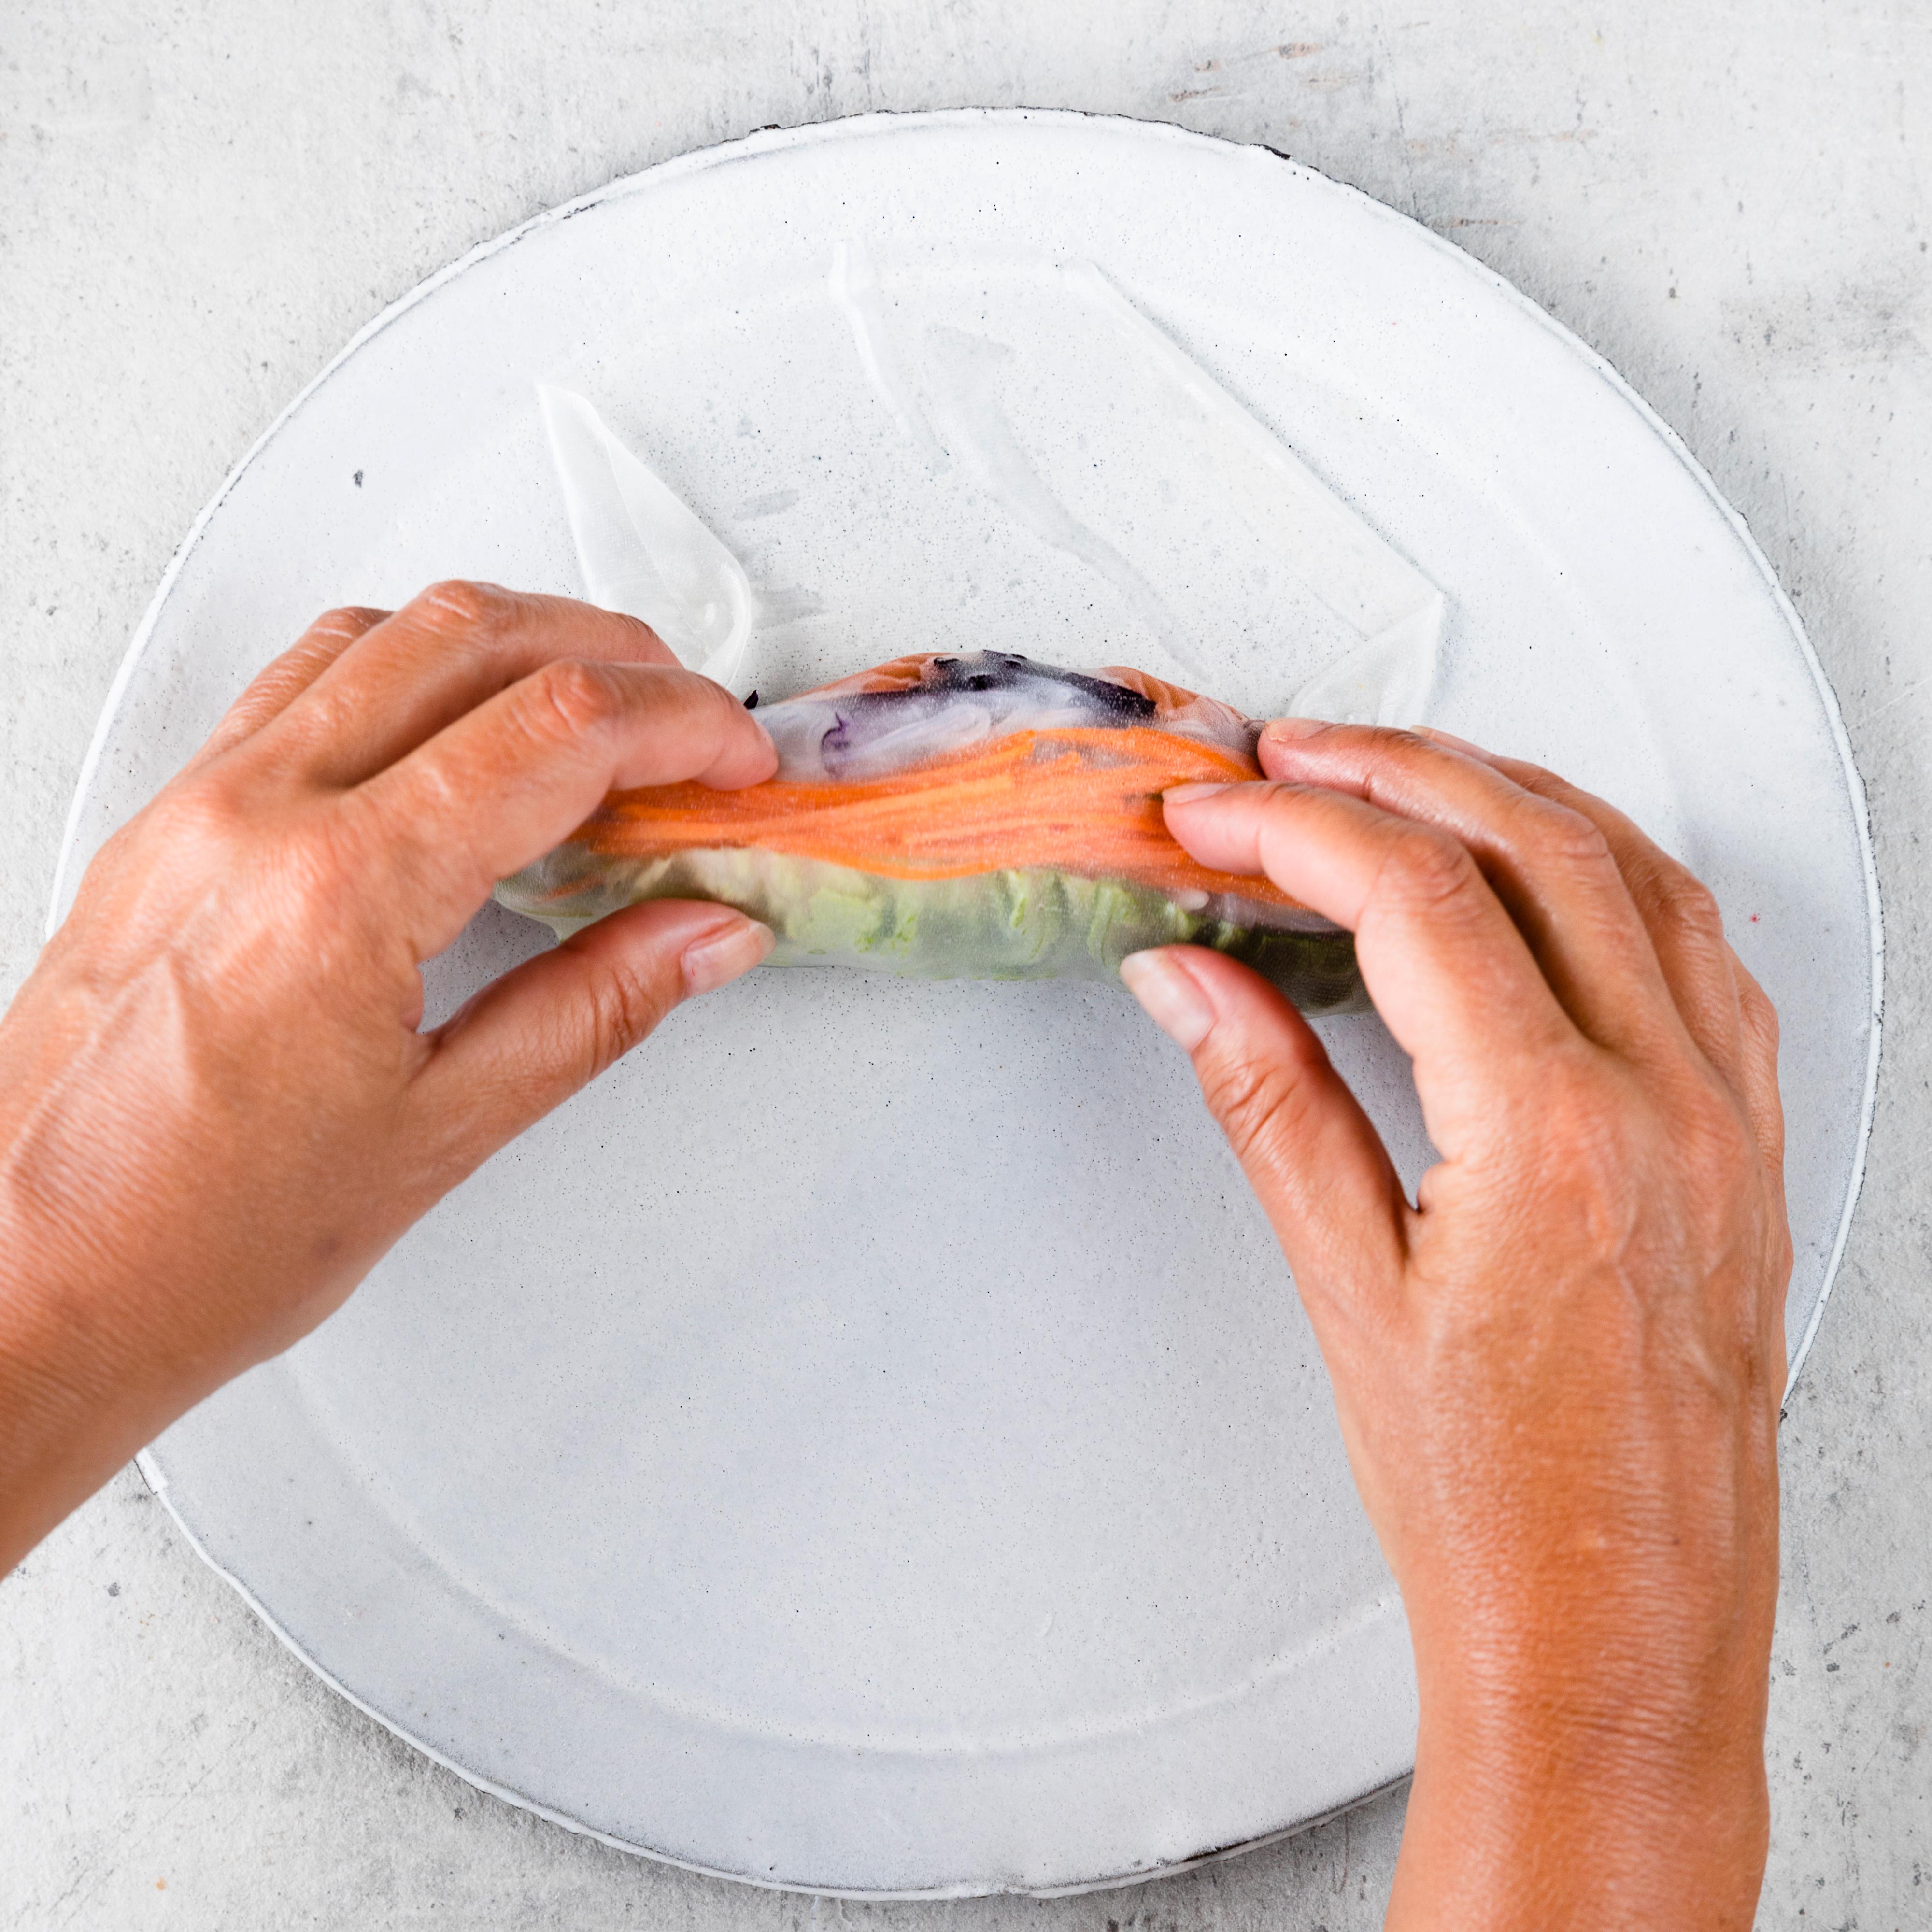 Pakk rispapiret stramt rundt fyllet. Brett inn sidene og rull sammen. Dekk til de ferdige rullene med et fuktig kjøkkenhåndkle mens du lager resten.